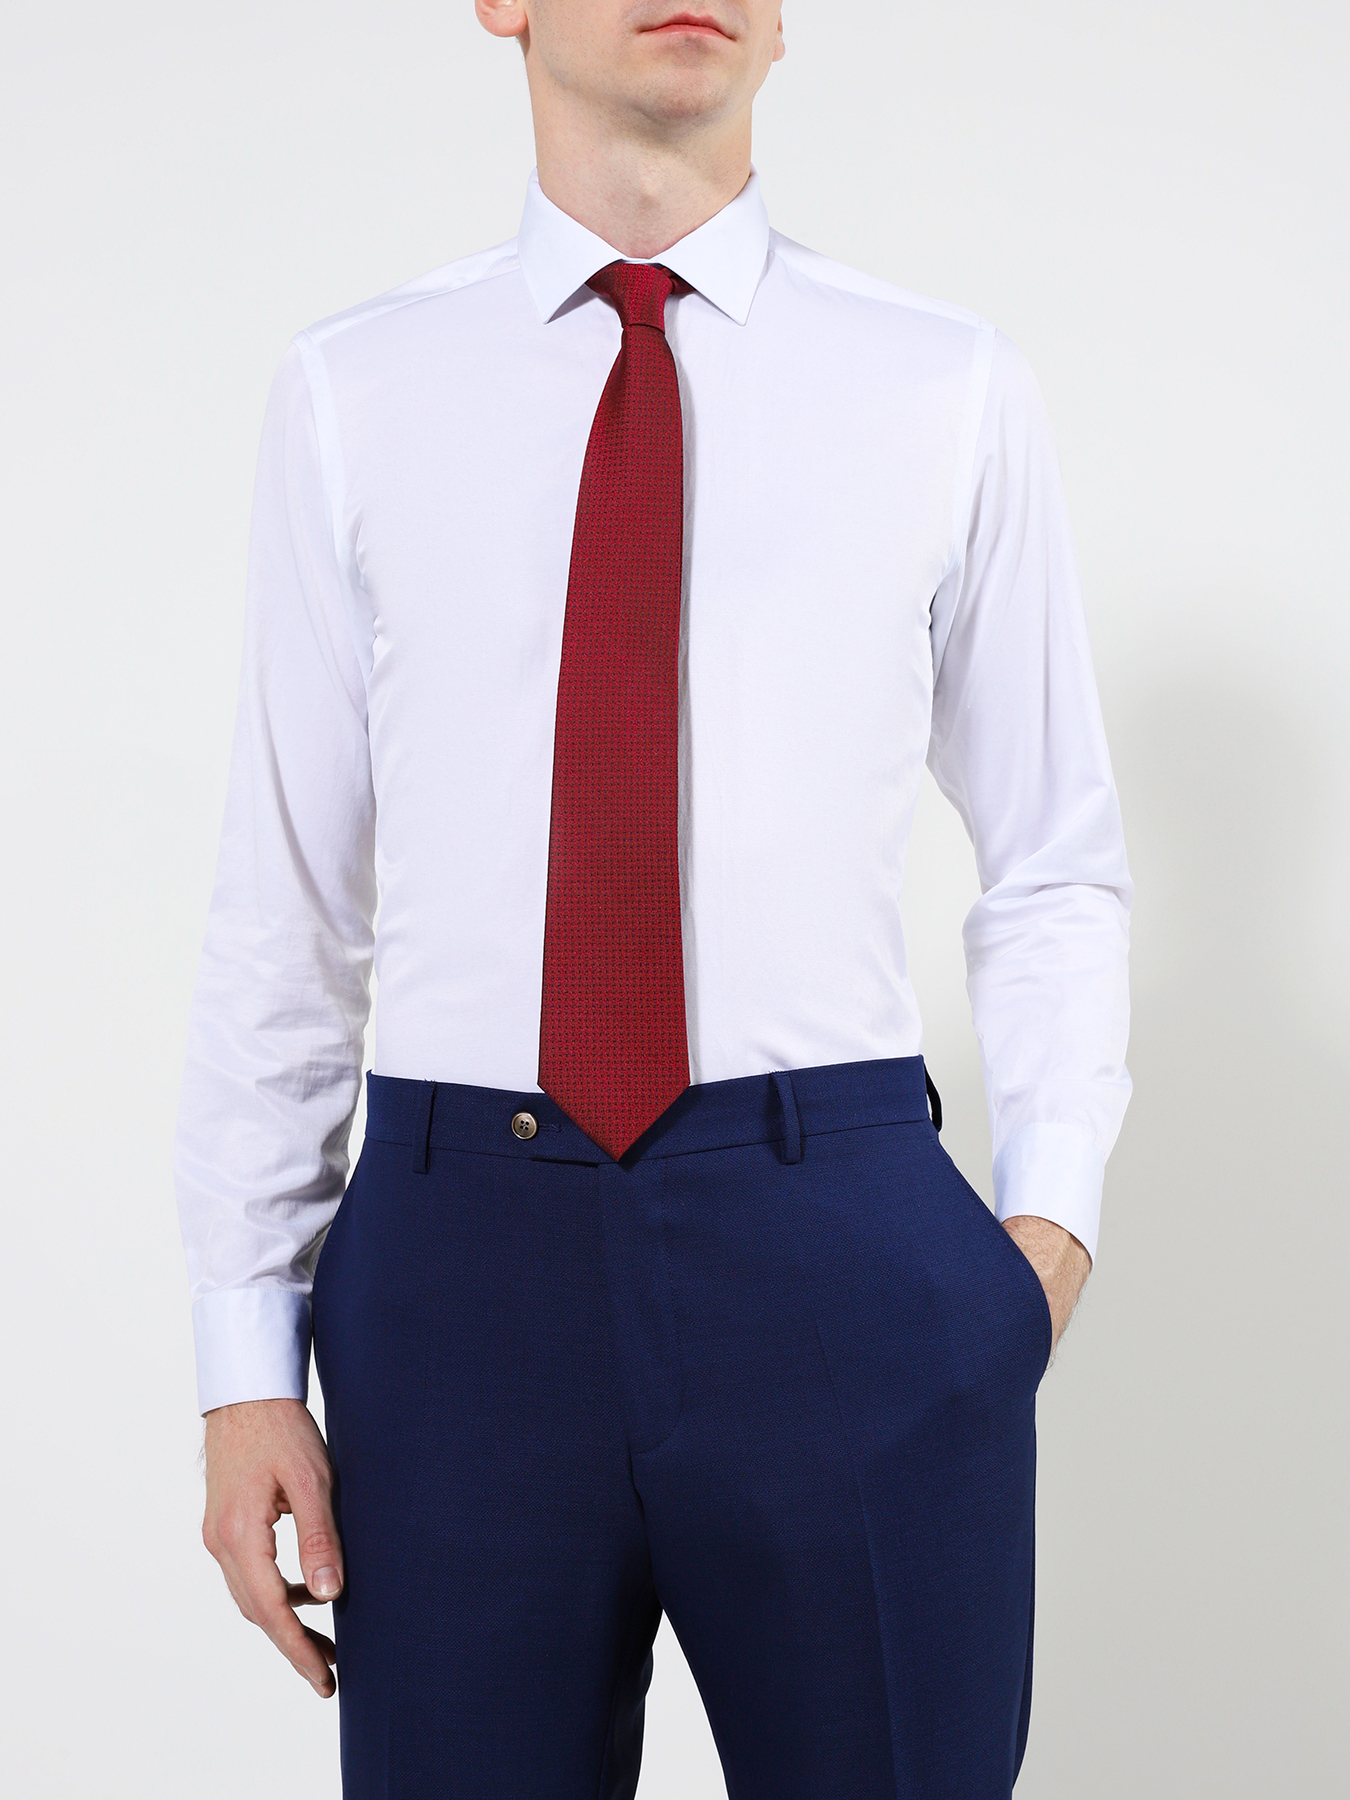 Белая рубашка с бордовым галстуком